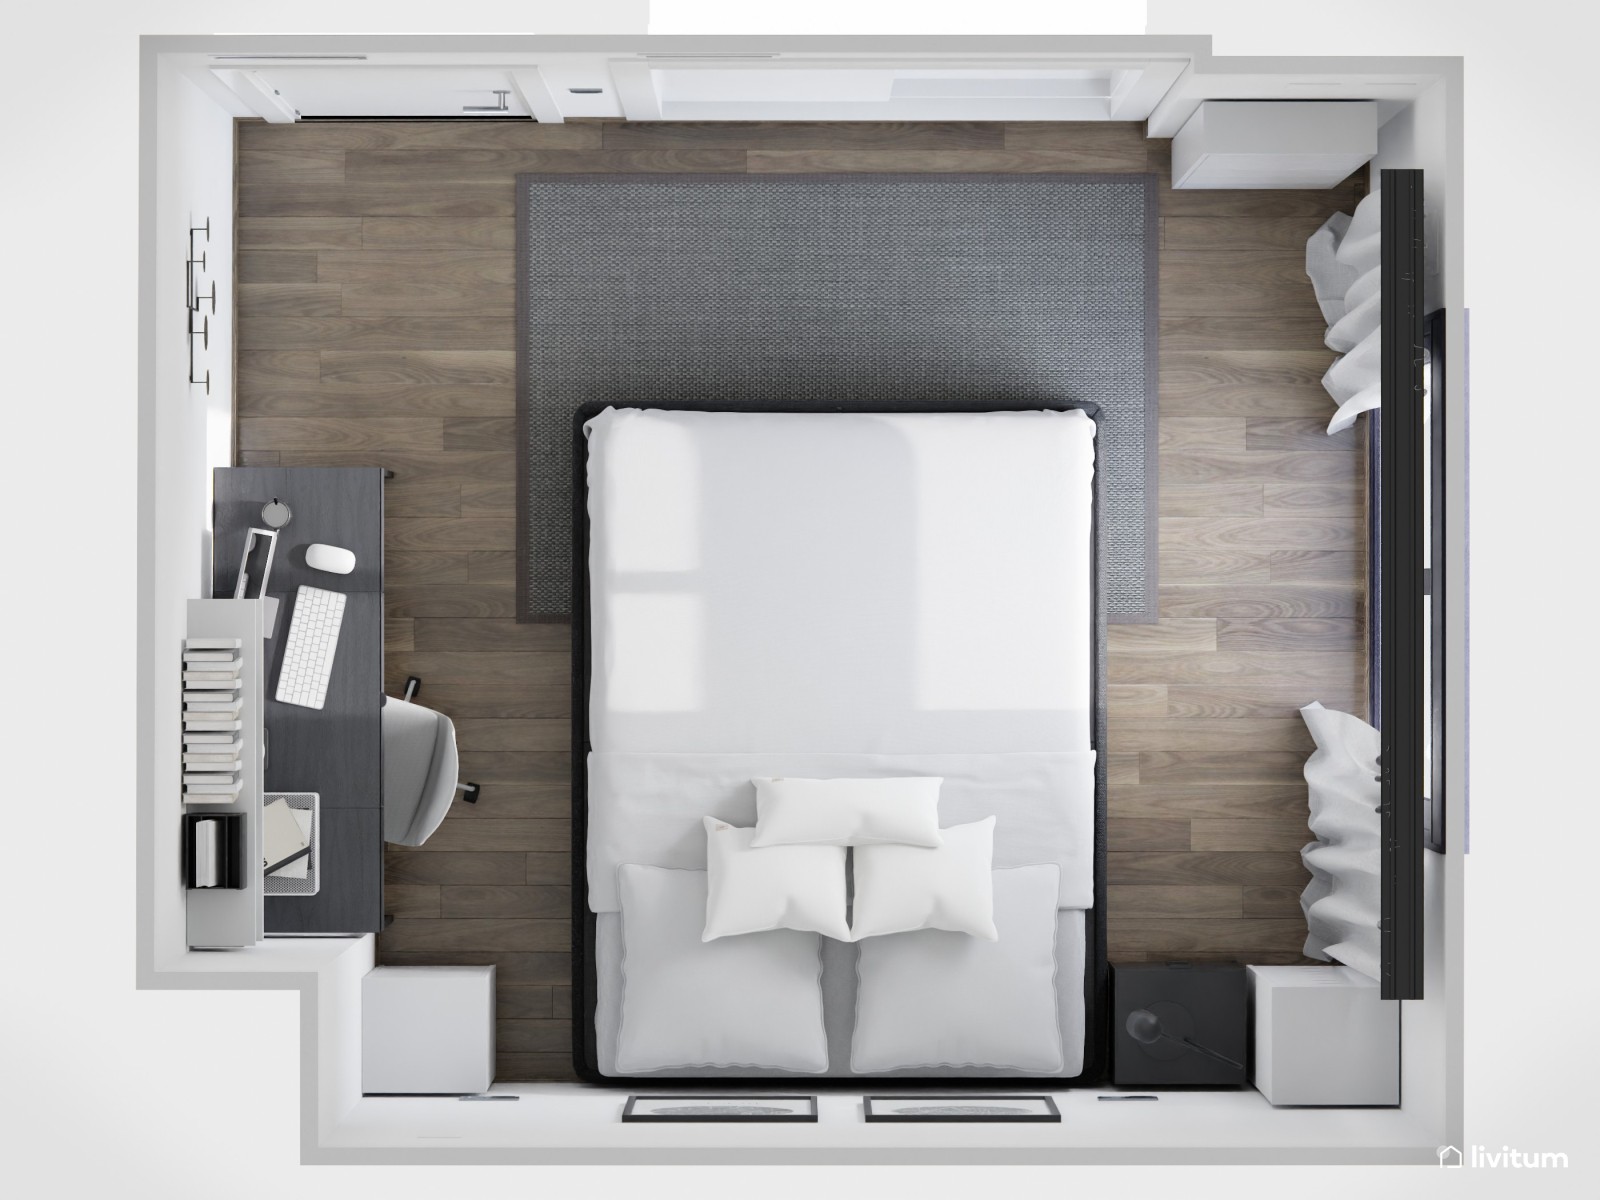 Dormitorio moderno en blanco y negro